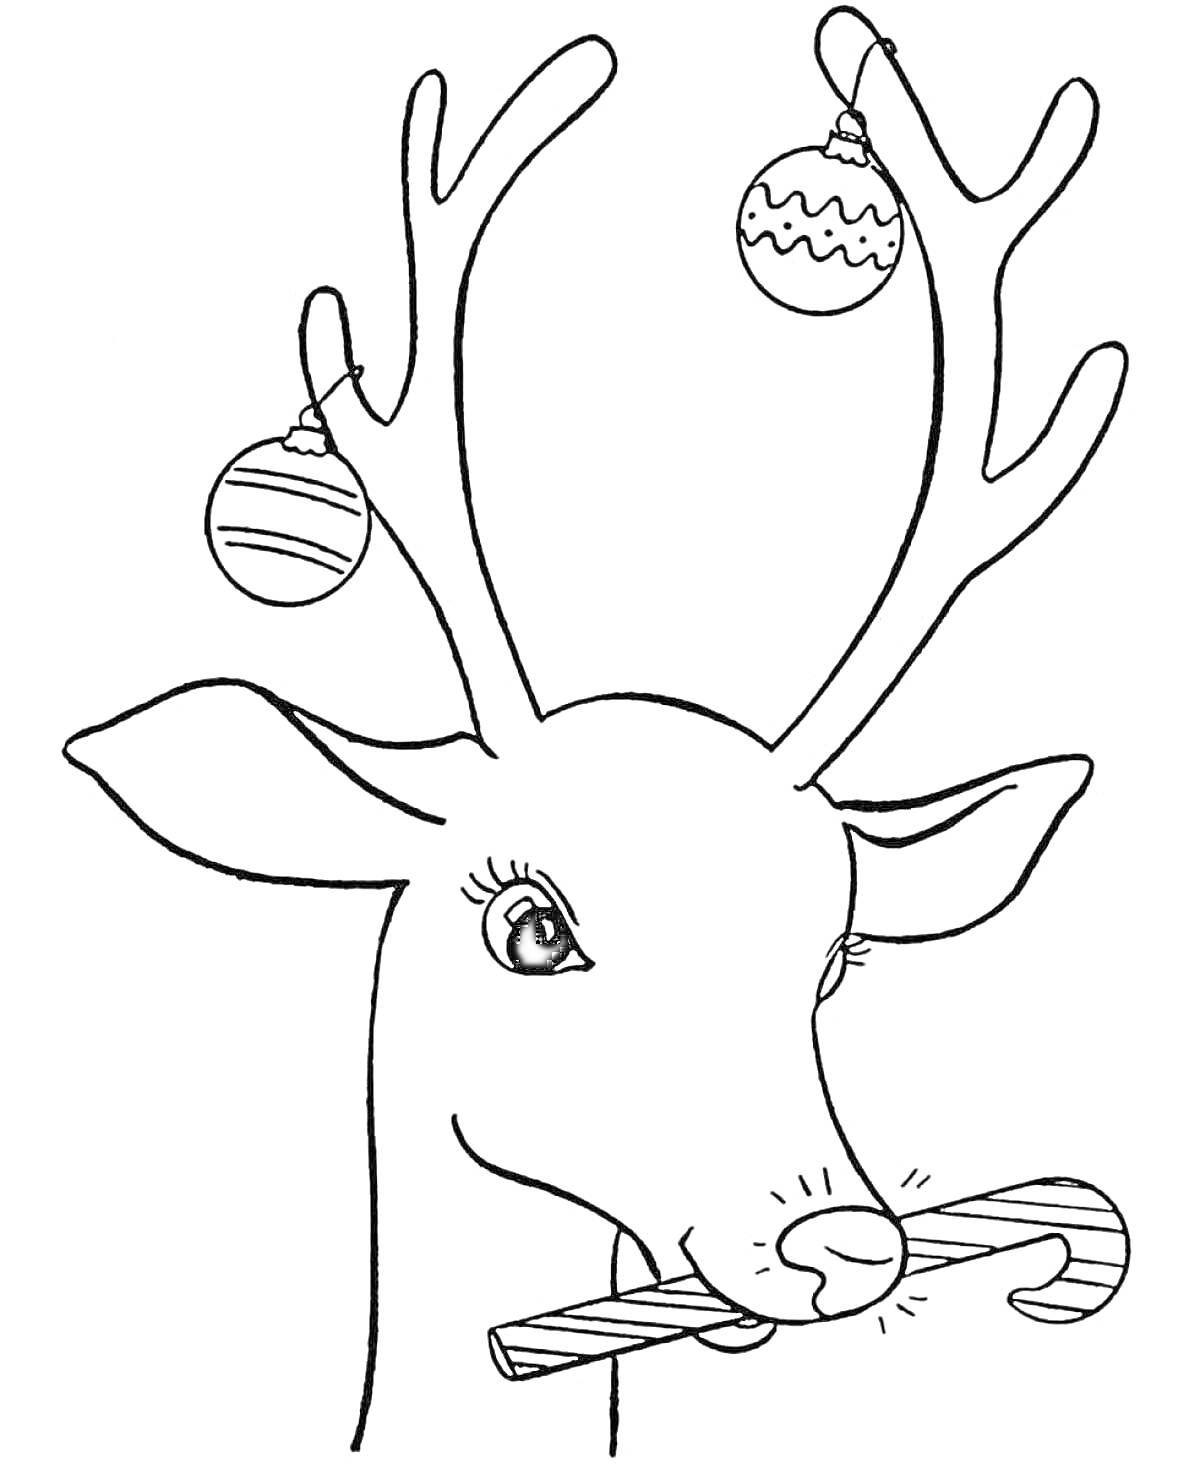 Раскраска новогодний олень с елочными шарами на рогах и леденцом в зубах